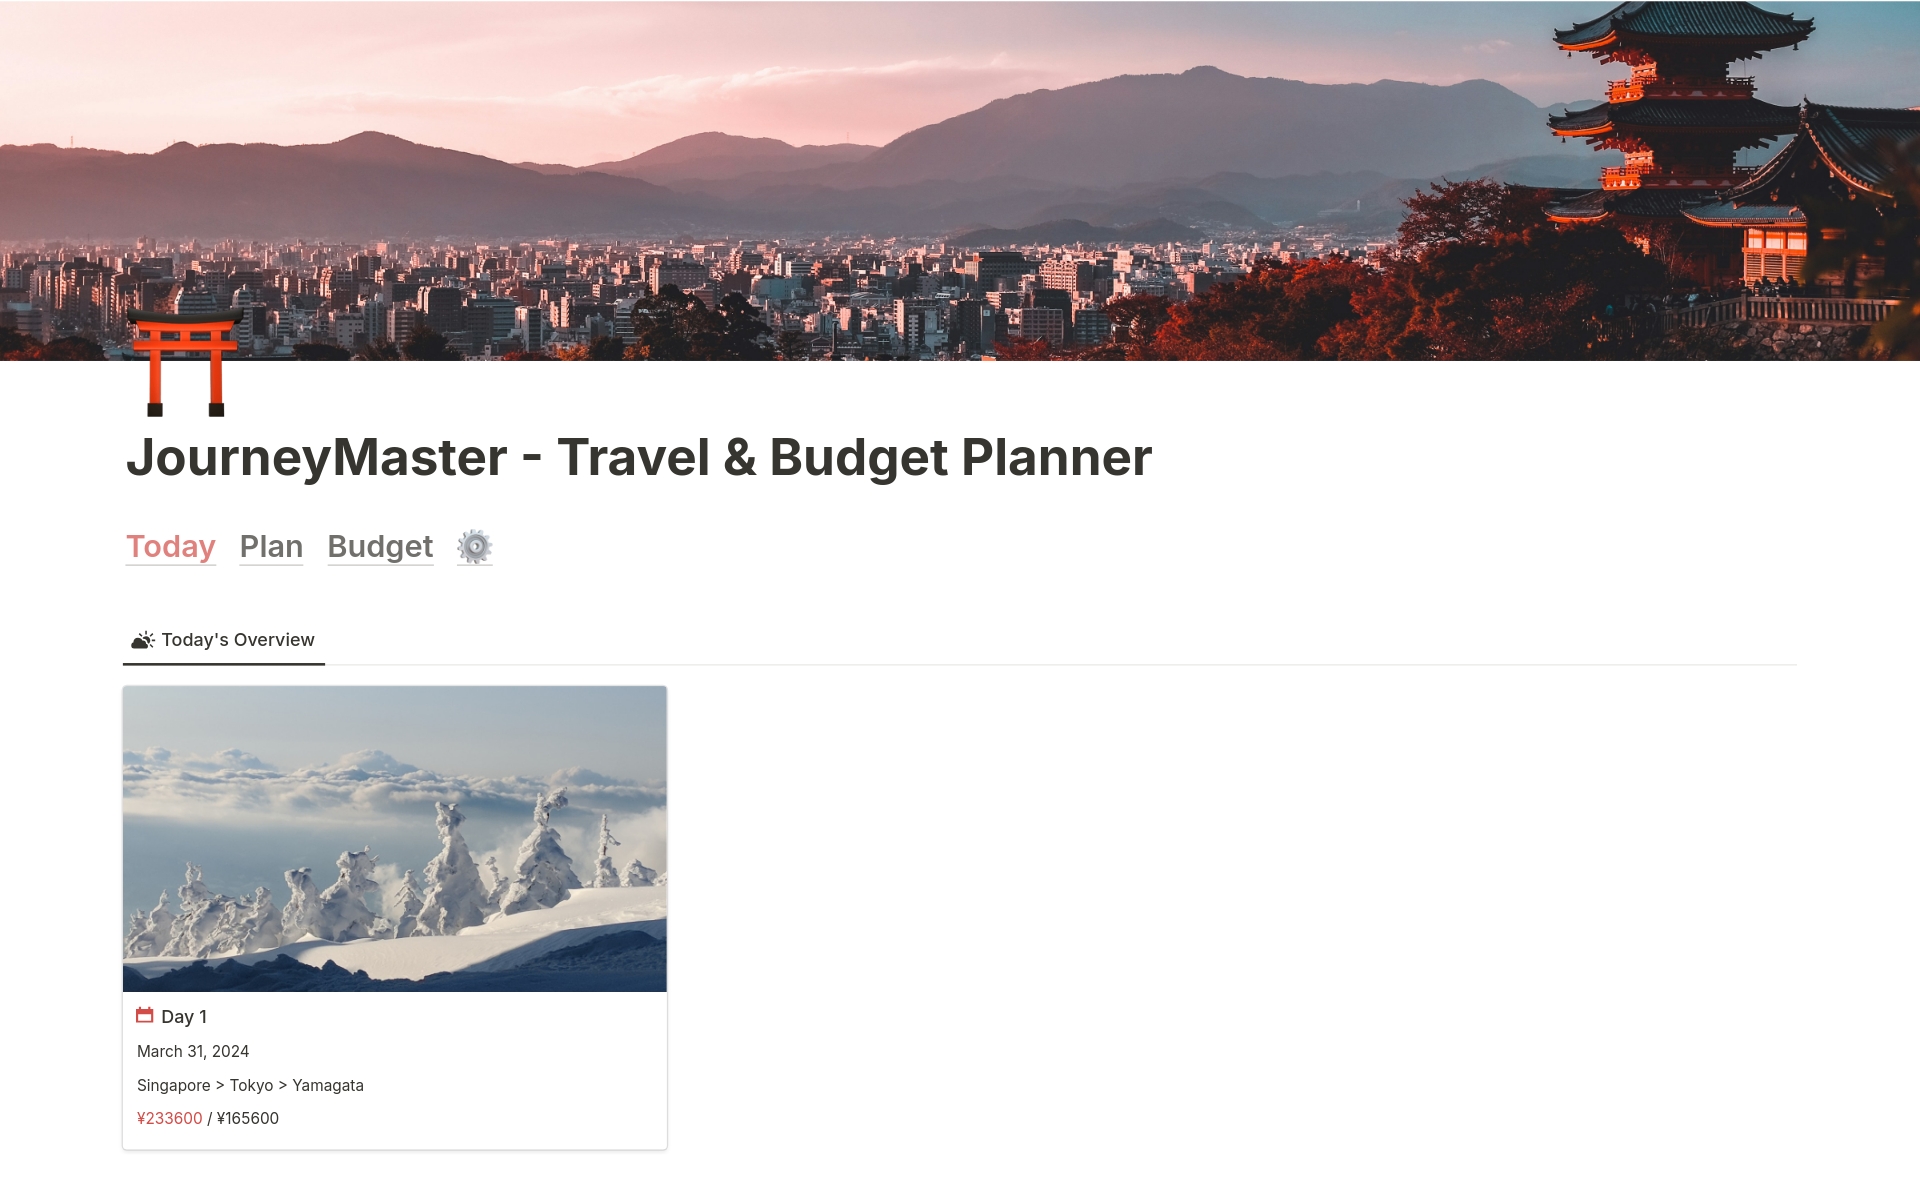 JourneyMaster - Itinerary and Budget Planner님의 템플릿 미리보기